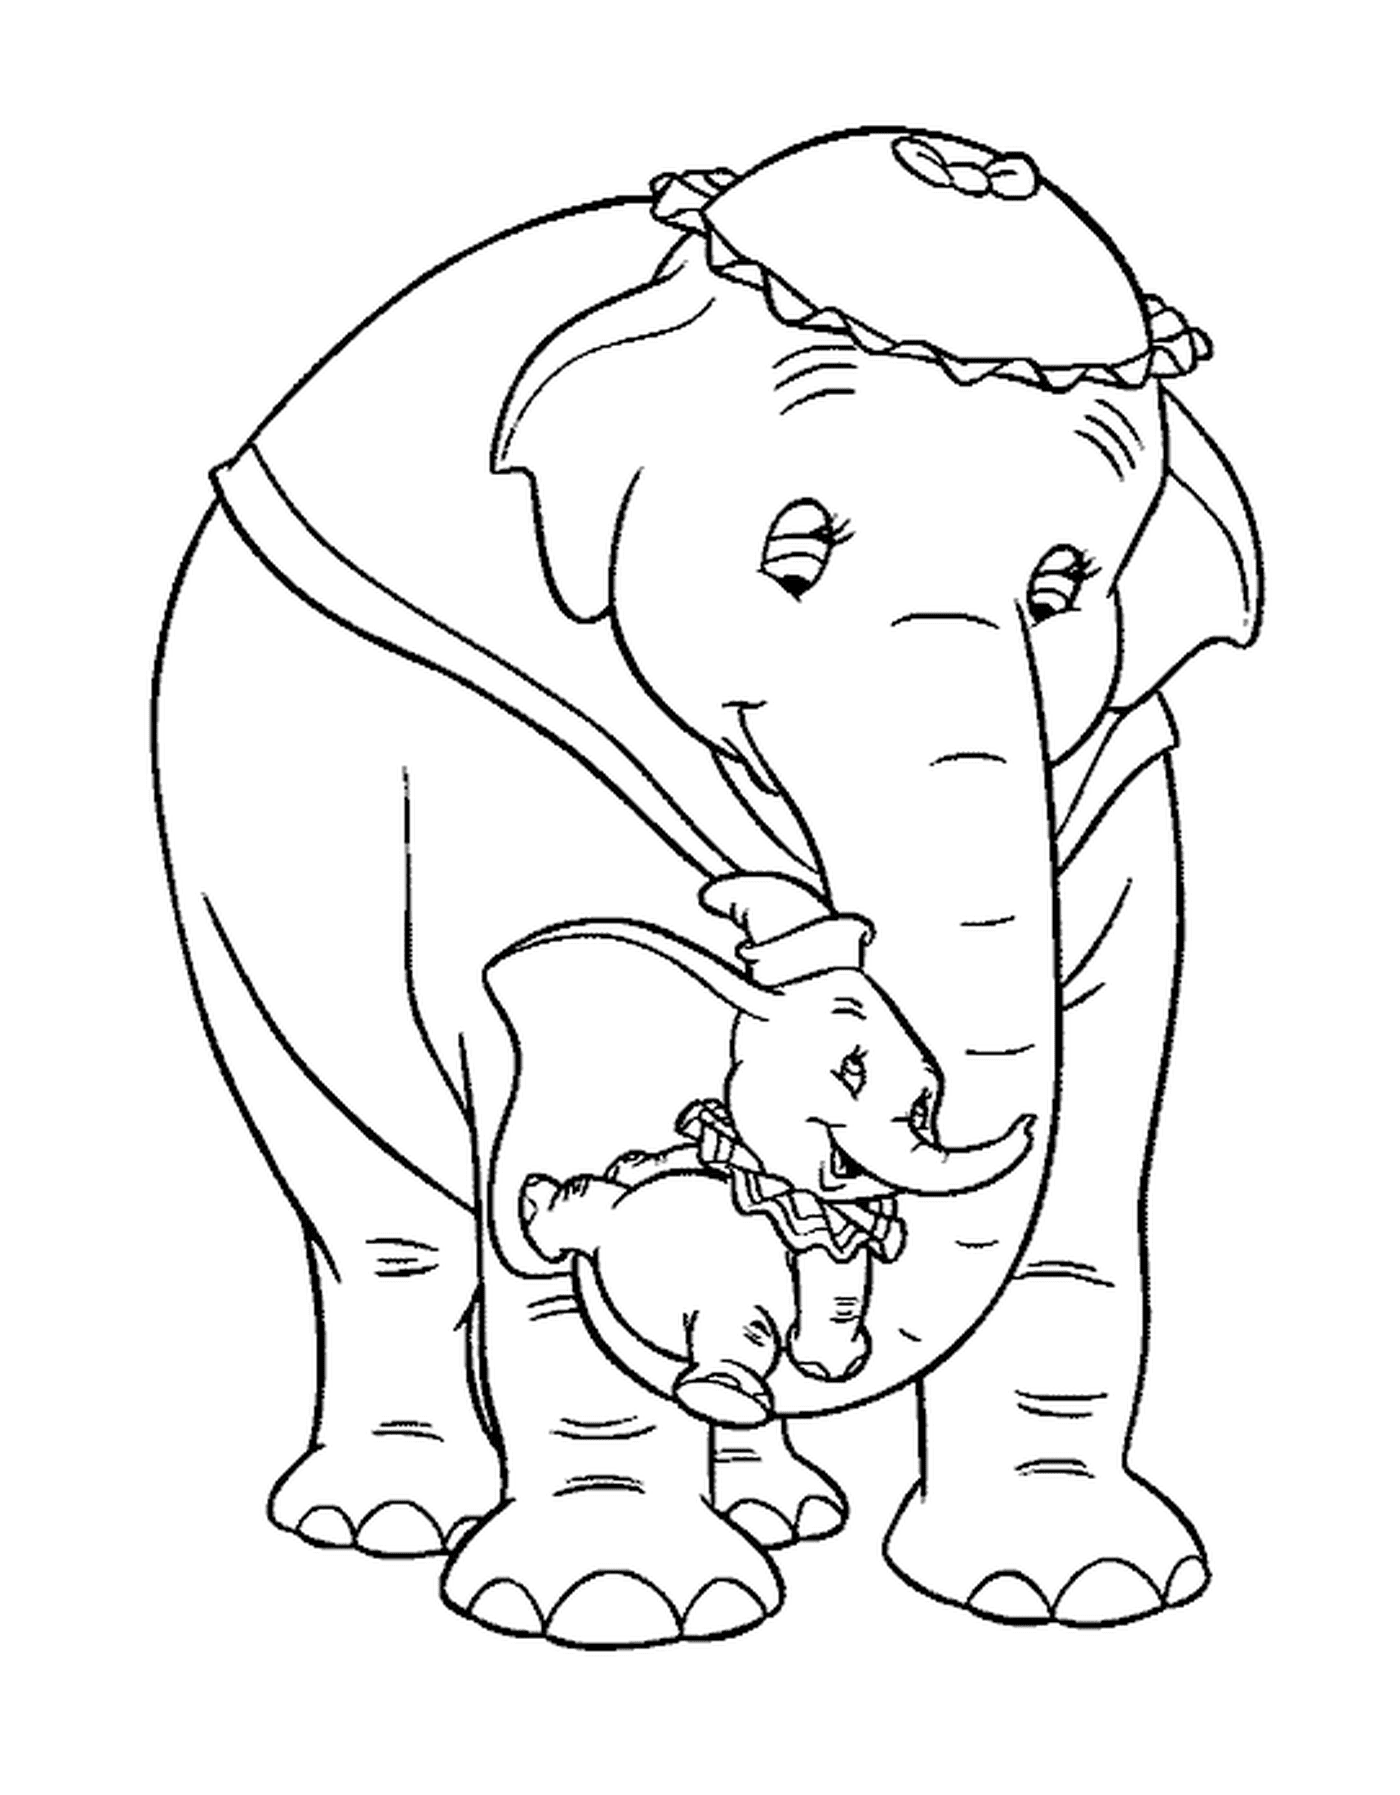  Ein erwachsener Elefant und sein Kind nebenan 